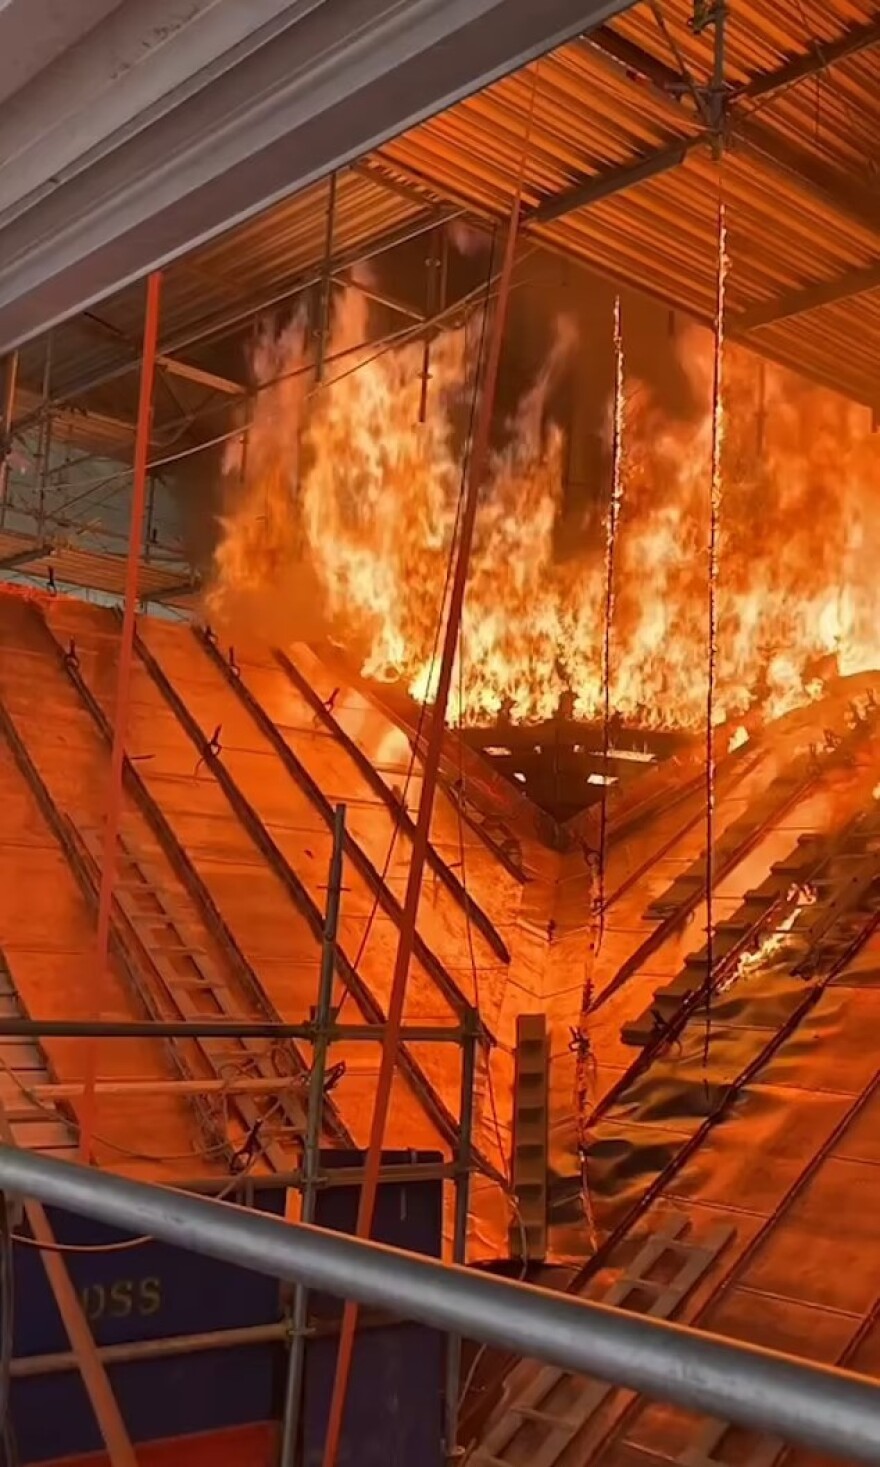 δανία - βίντεο: εργάτες σώθηκαν την τελευταία στιγμή από τη φωτιά στο παλιό χρηματιστήριο της κοπεγχάγης